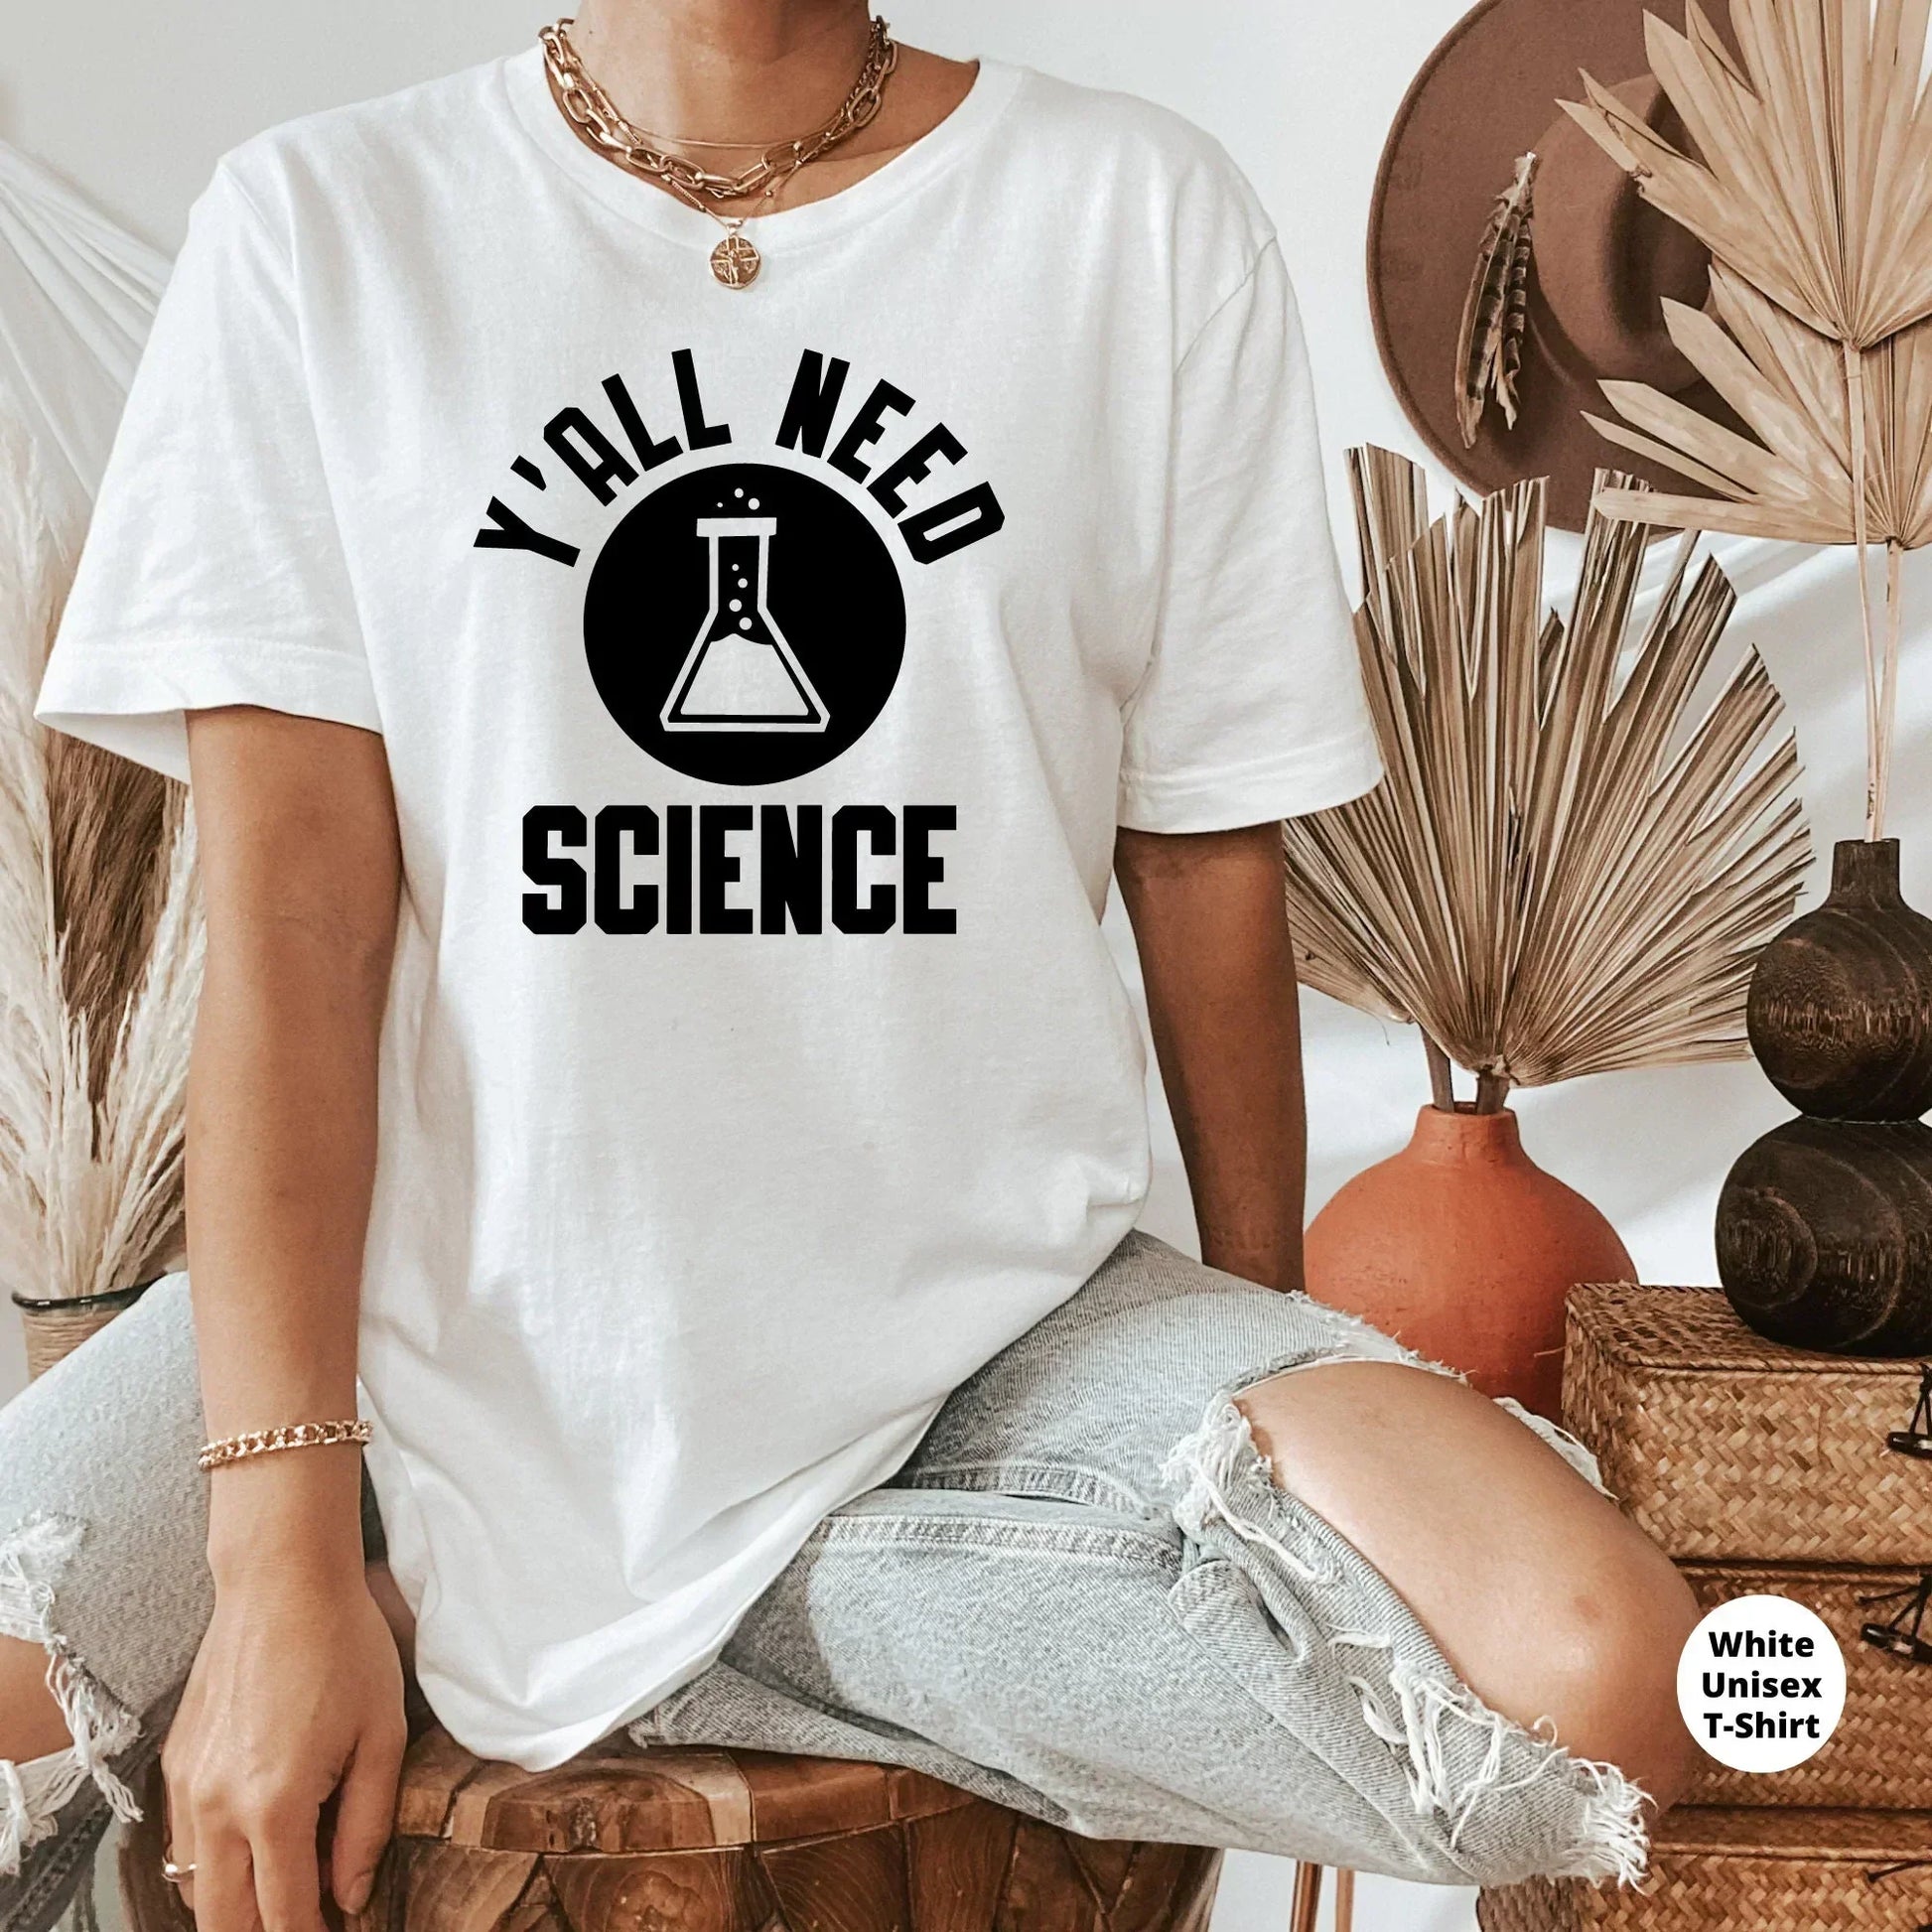 Science Teacher Shirt, Yall Need Science, Teacher Sweatshirt, Gift for Teacher Elements Teacher Shirt, Funny Chemistry Teacher Shirt HMDesignStudioUS